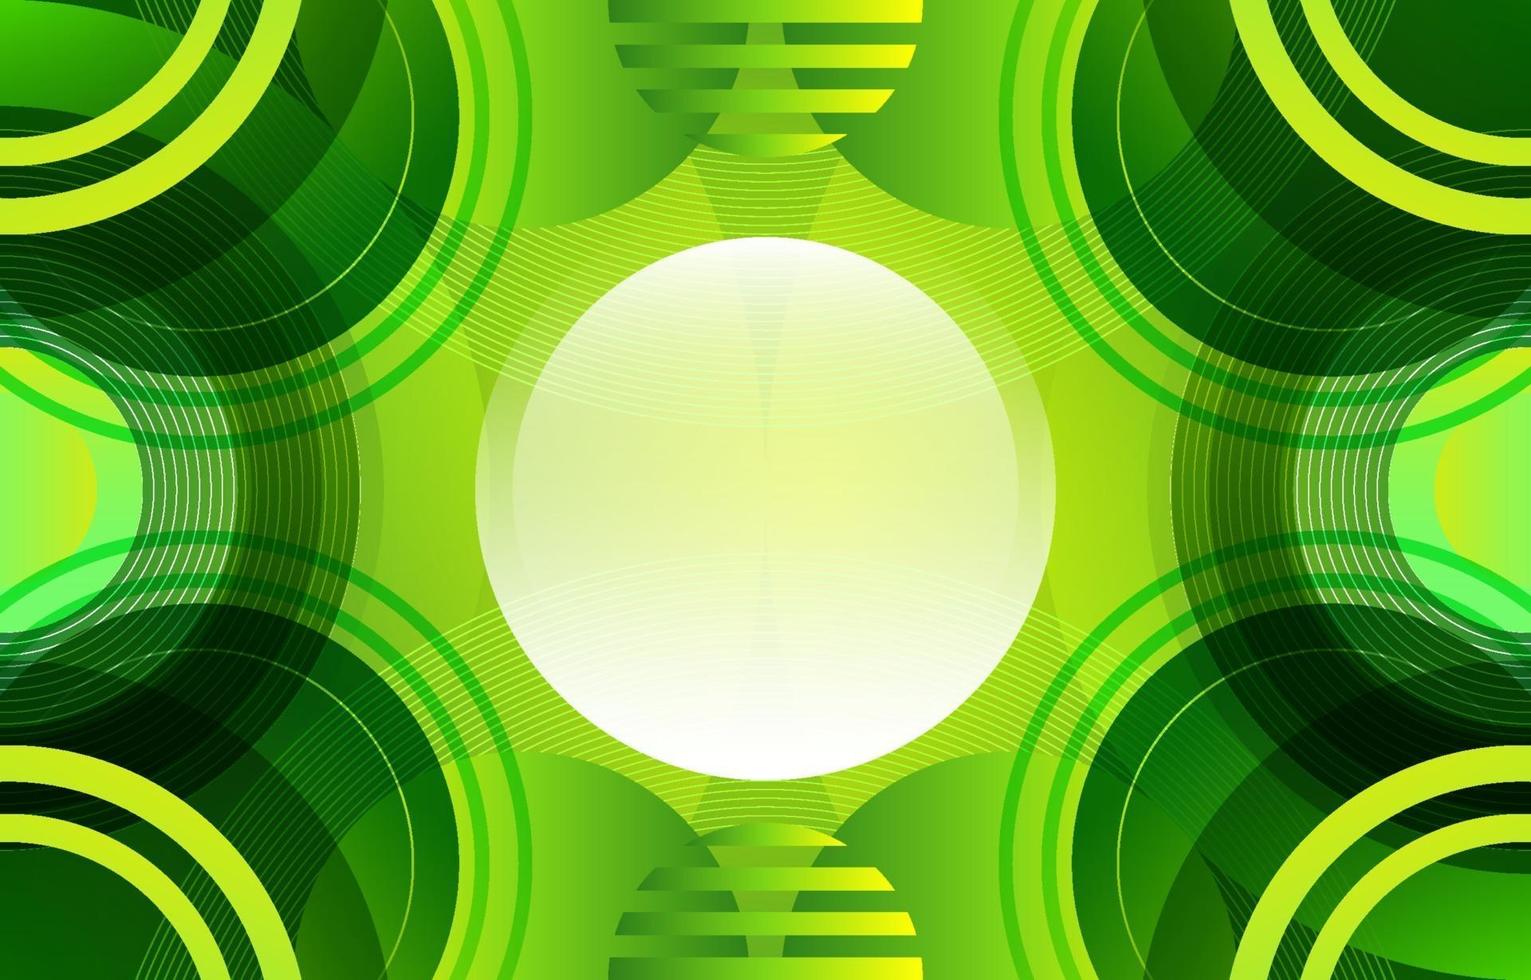 gradiente de círculo geométrico verde criativo vetor